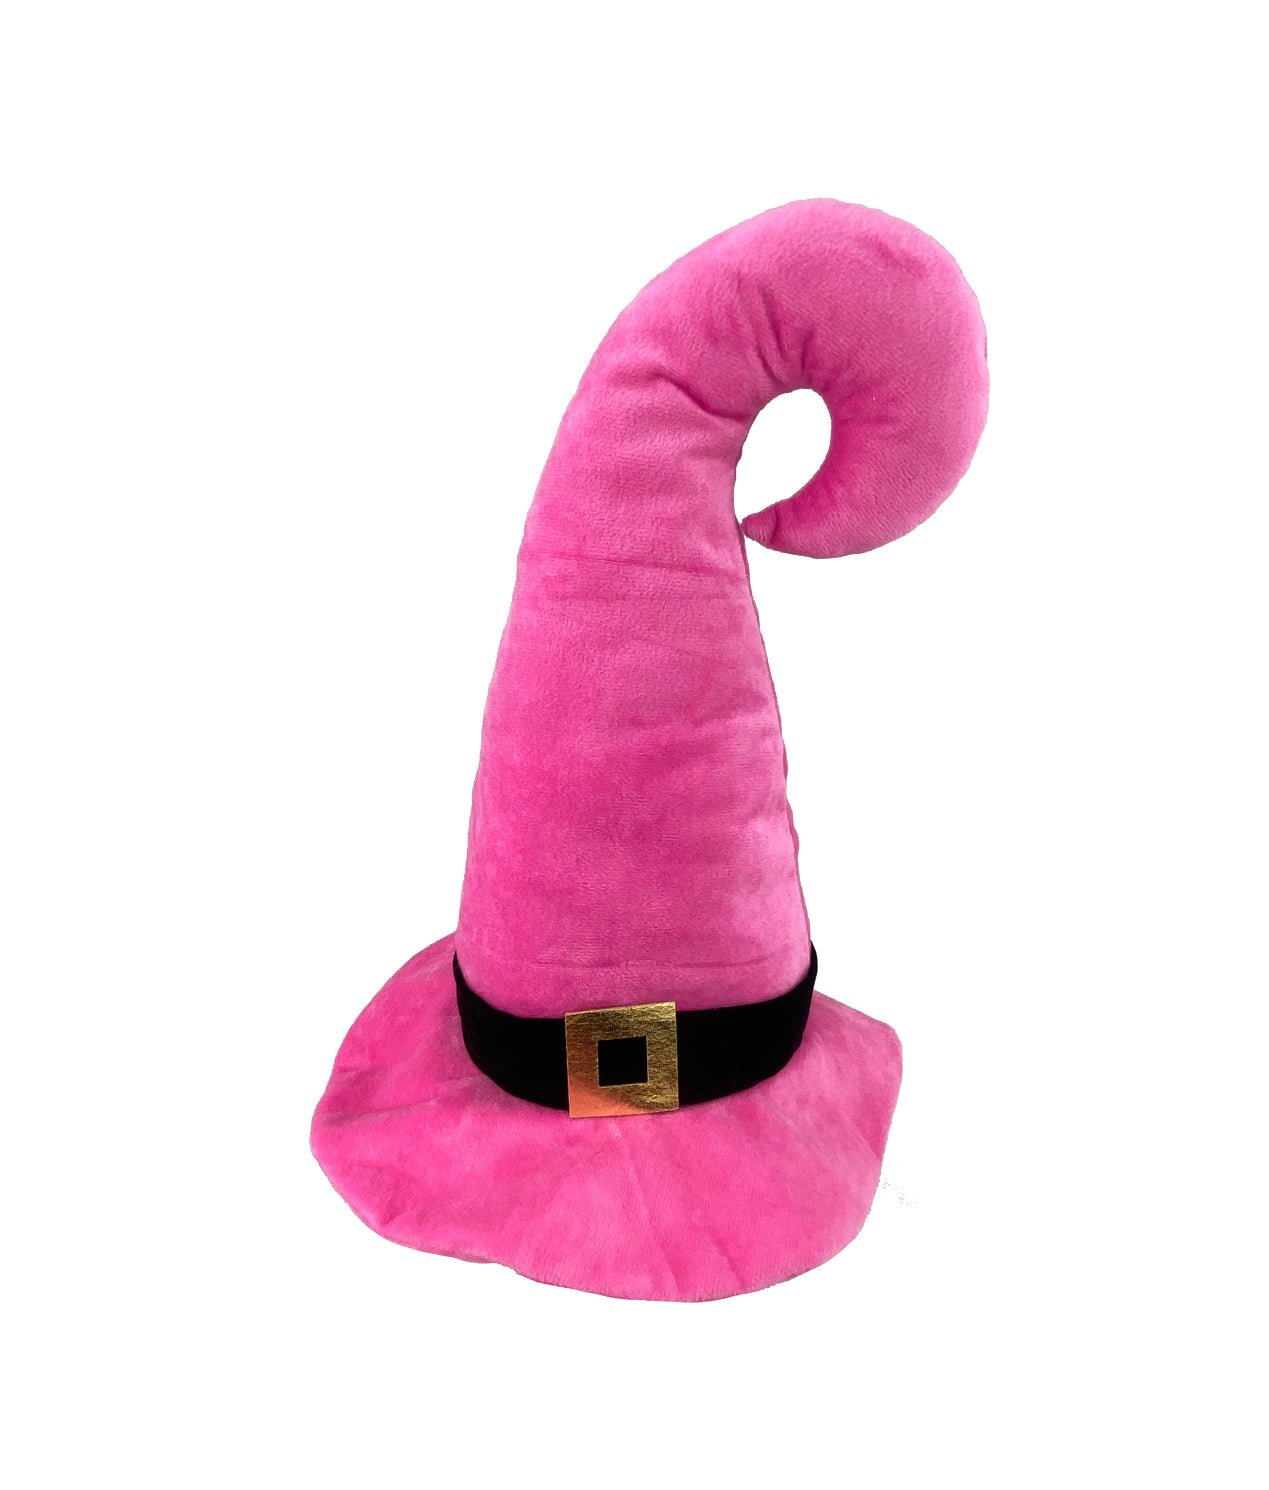 Plush Witch hat - pink - Greenery MarketSeasonal & Holiday Decorations